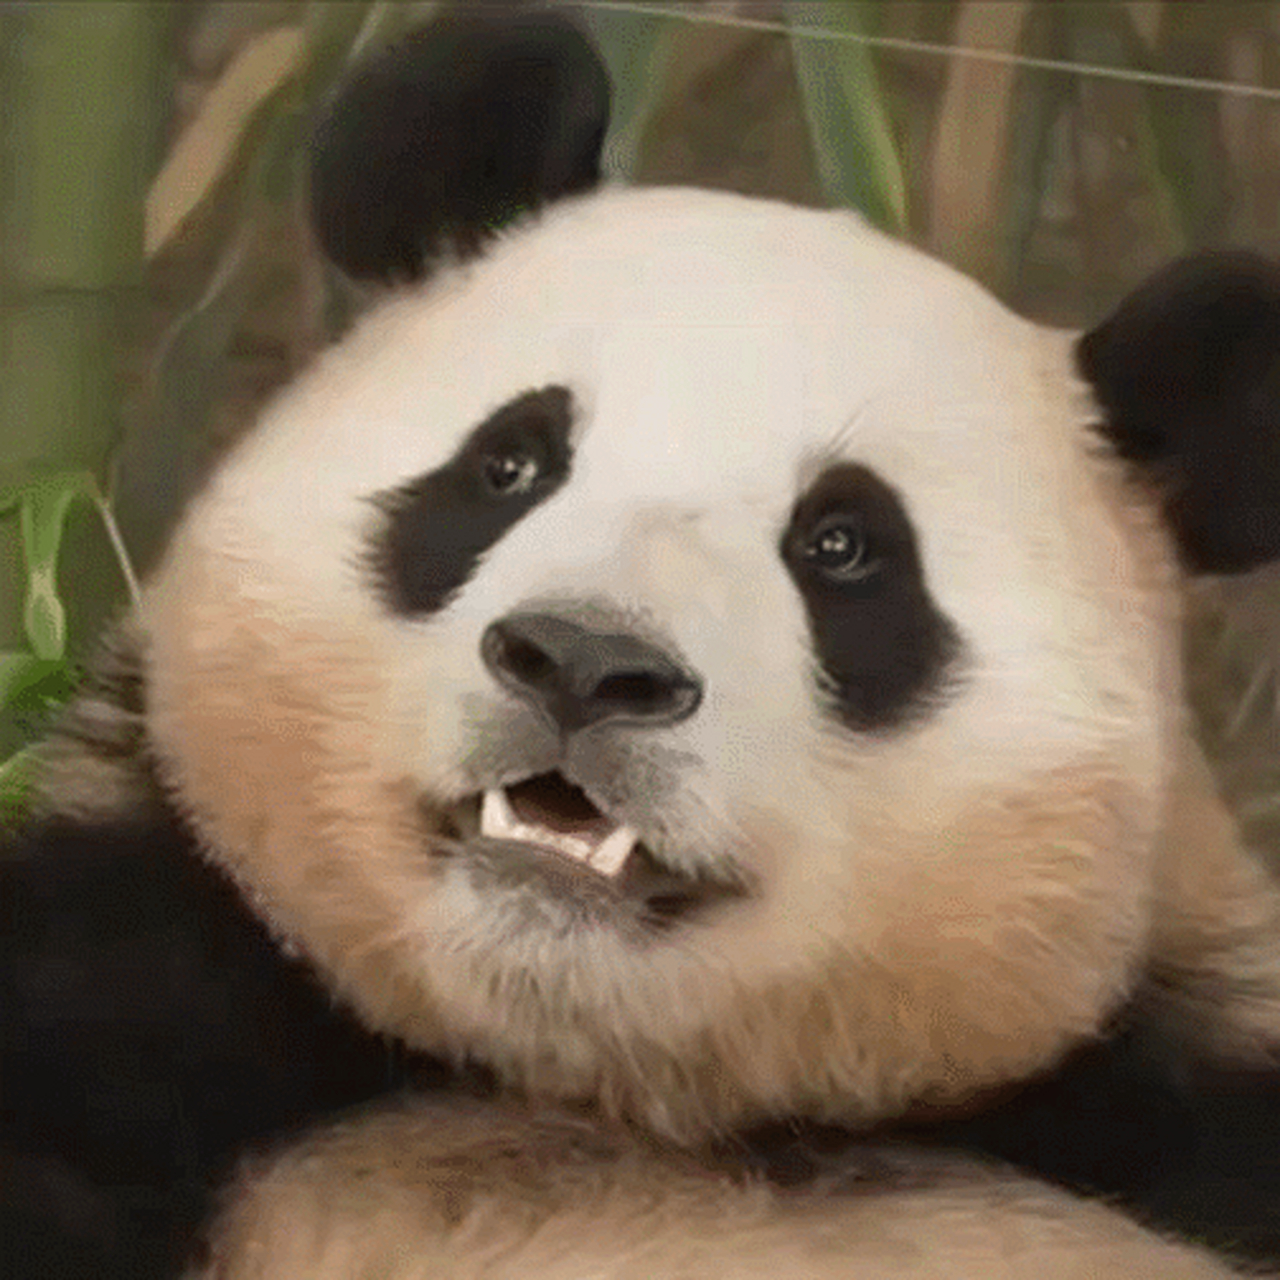 翻白眼熊猫表情包图片